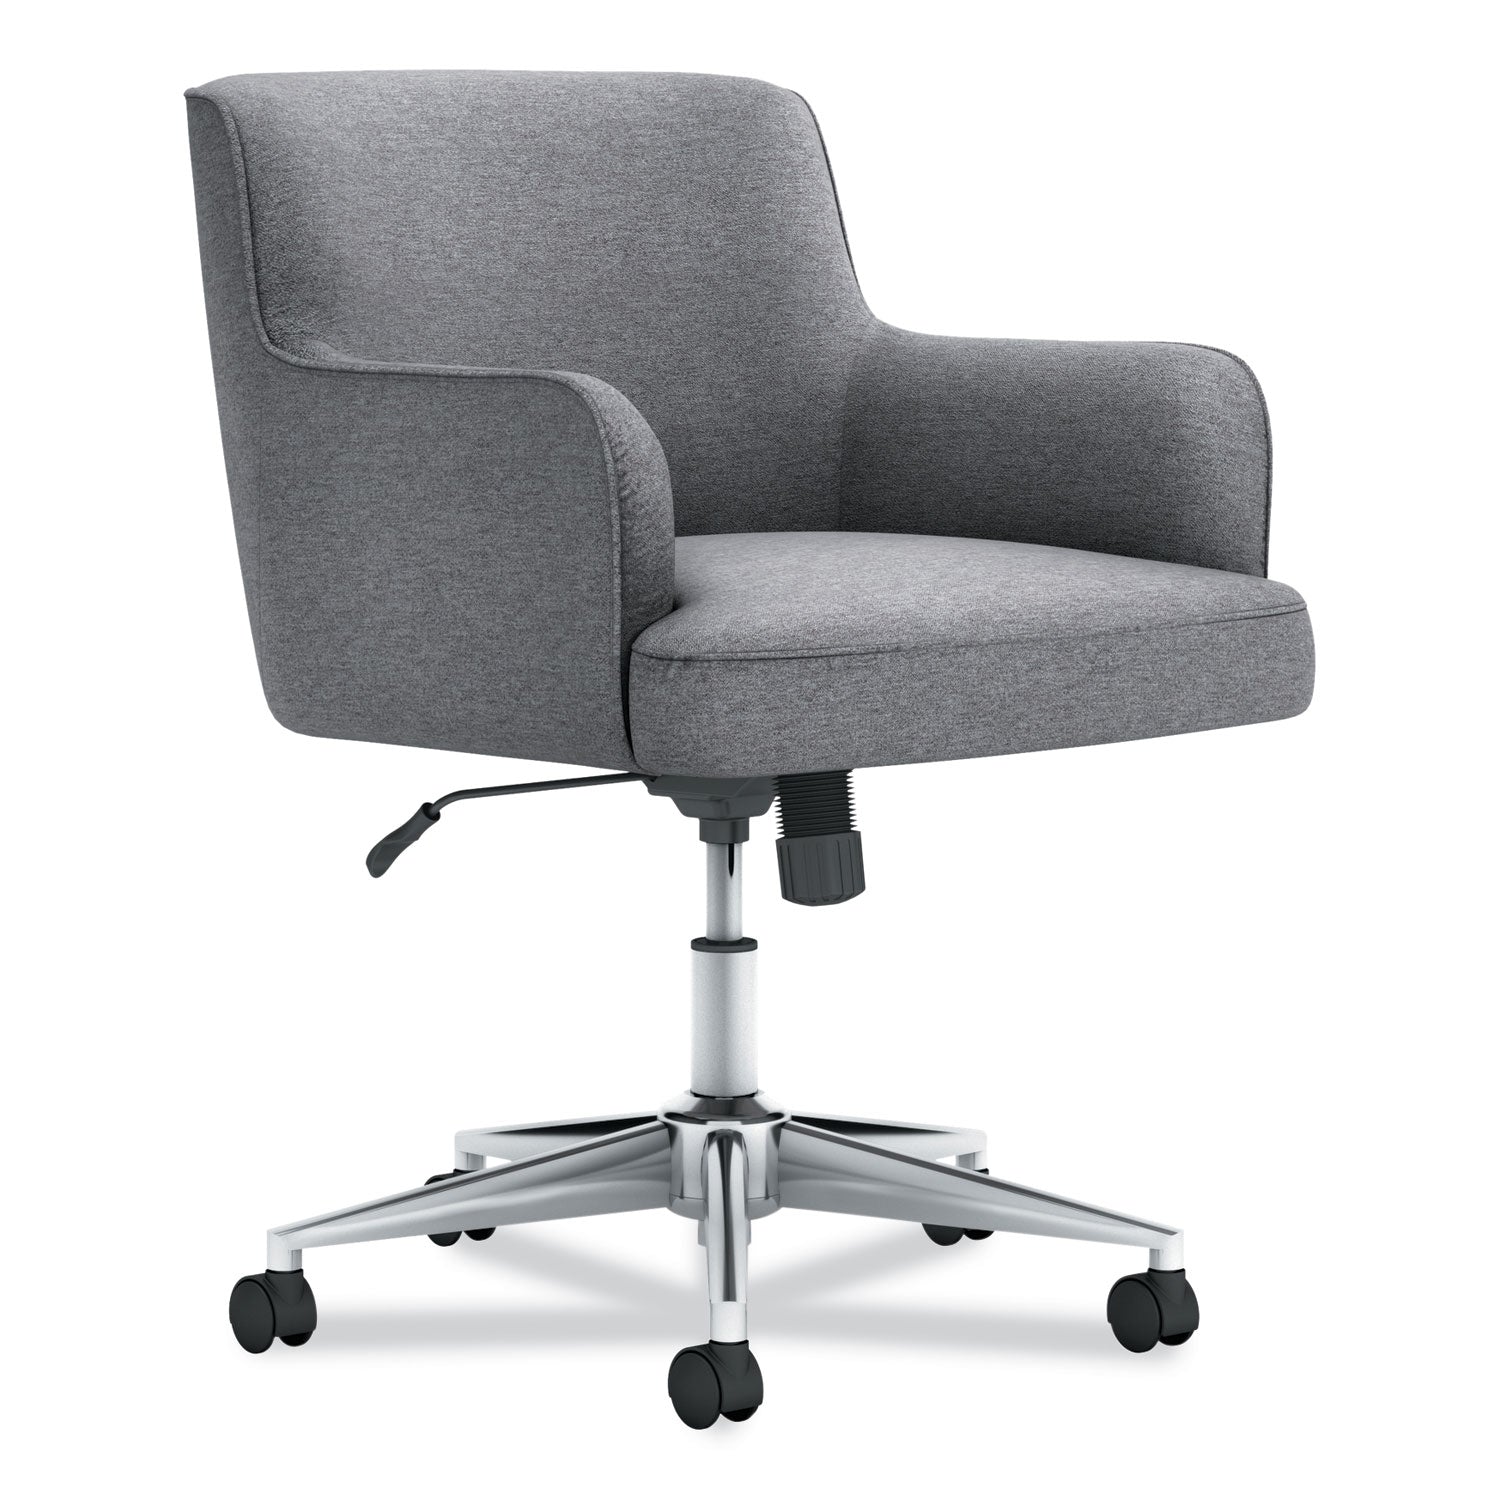 matter-multipurpose-chair-23-x-248-x-34-light-gray-seat-light-gray-back-chrome-base-ships-in-7-10-business-days_honvl232gry01 - 1